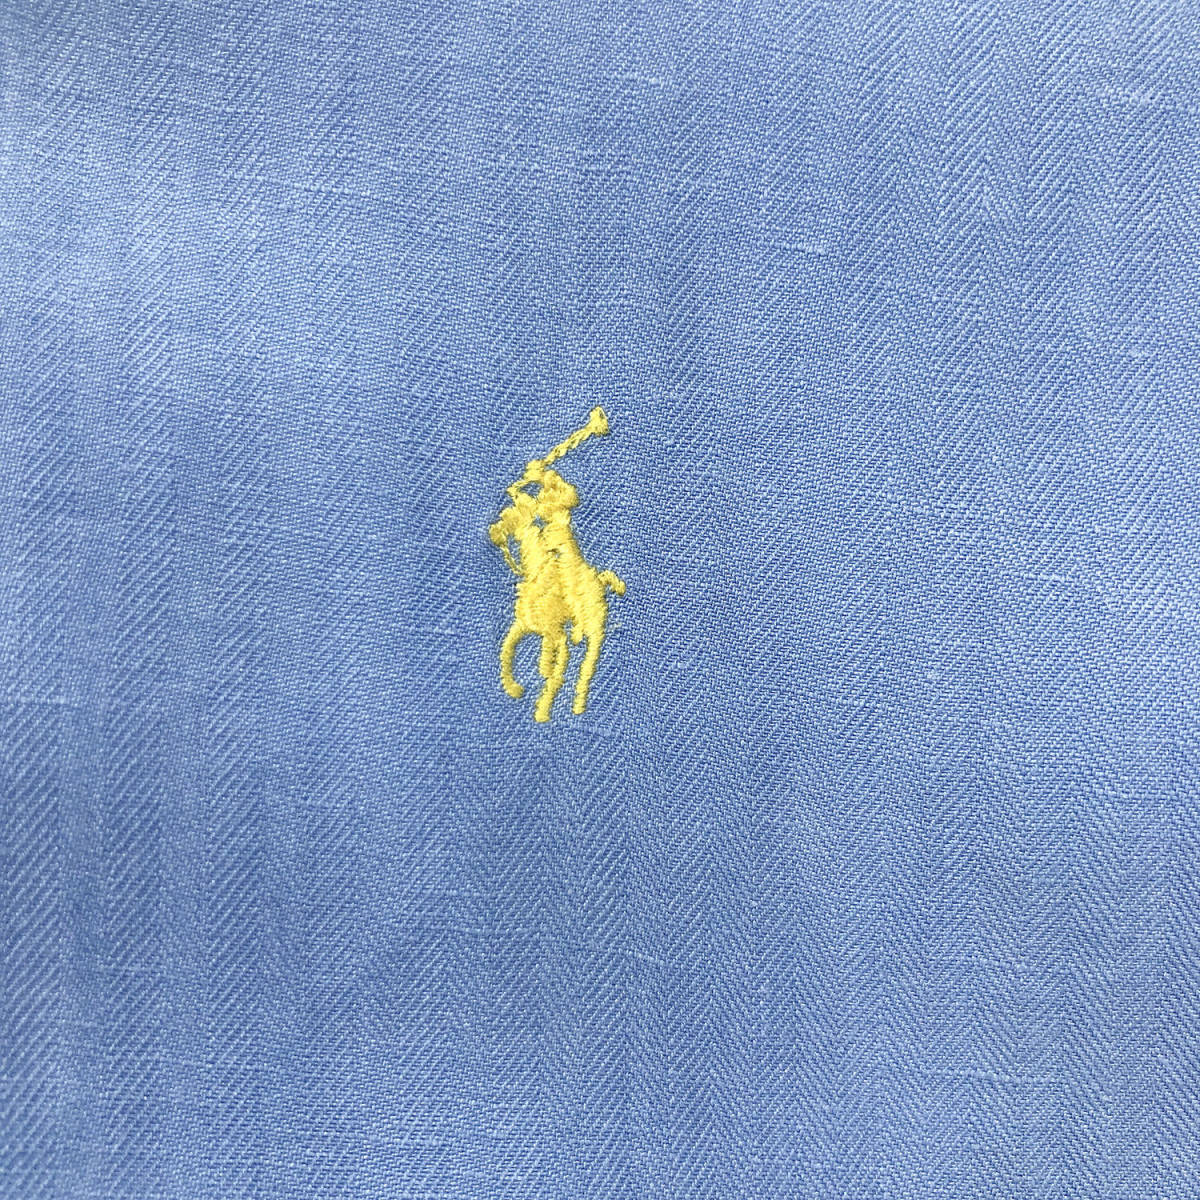 90S Polo Ralph Lauren шелк linen. воротник рубашка с коротким рукавом открытый цвет b люмен zL Polo by Ralph Lauren б/у одежда BF1481